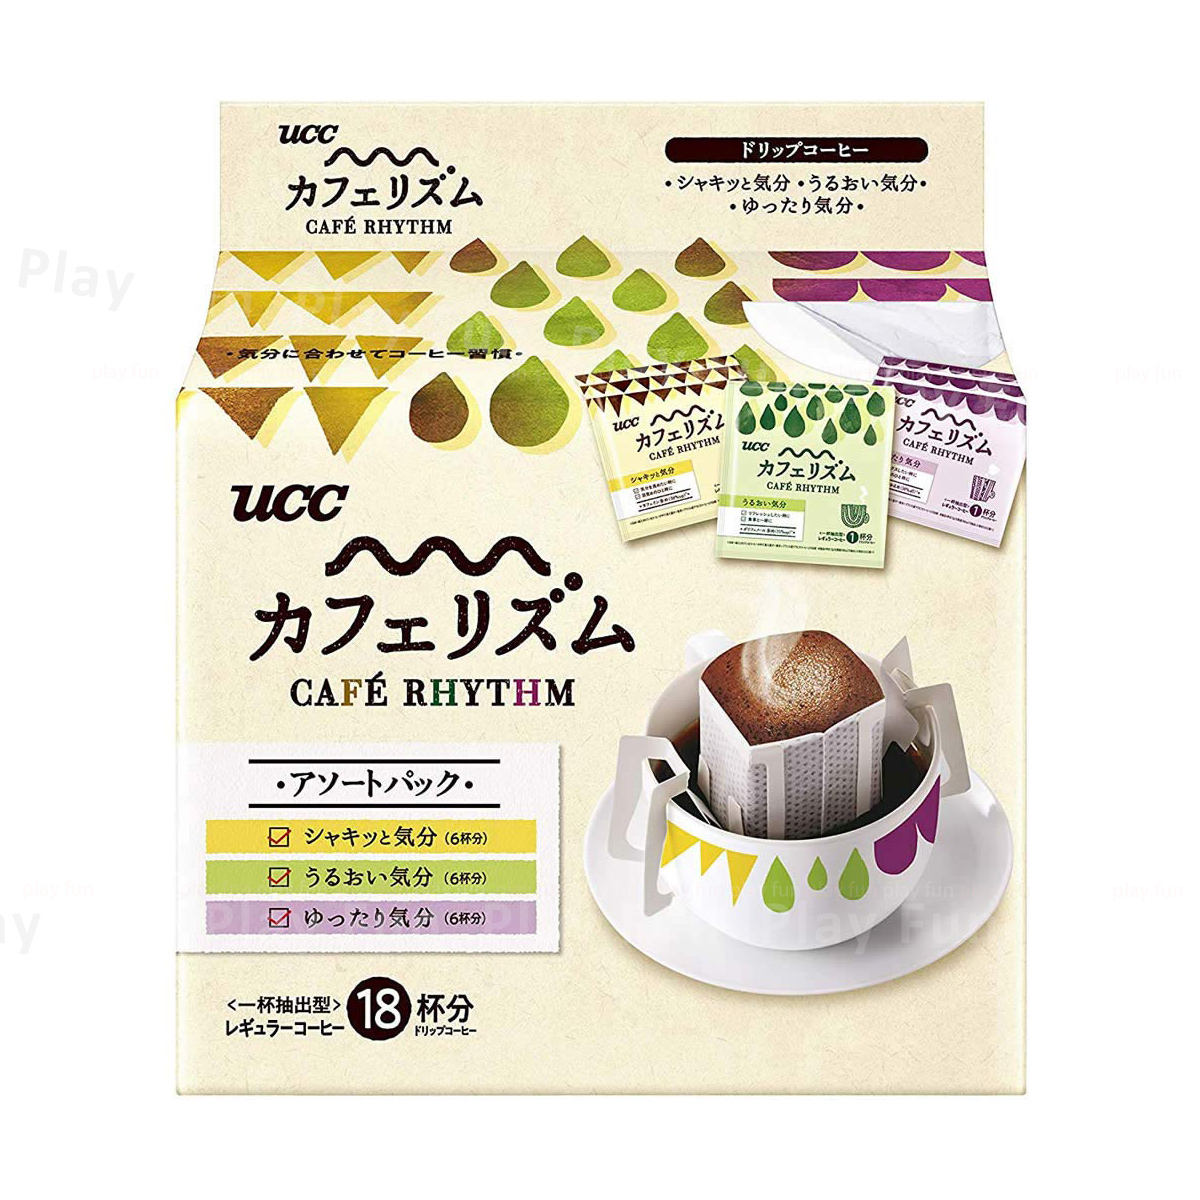 UCC - Café Rhythm 雜錦滴漏咖啡 (7g x 18杯裝)